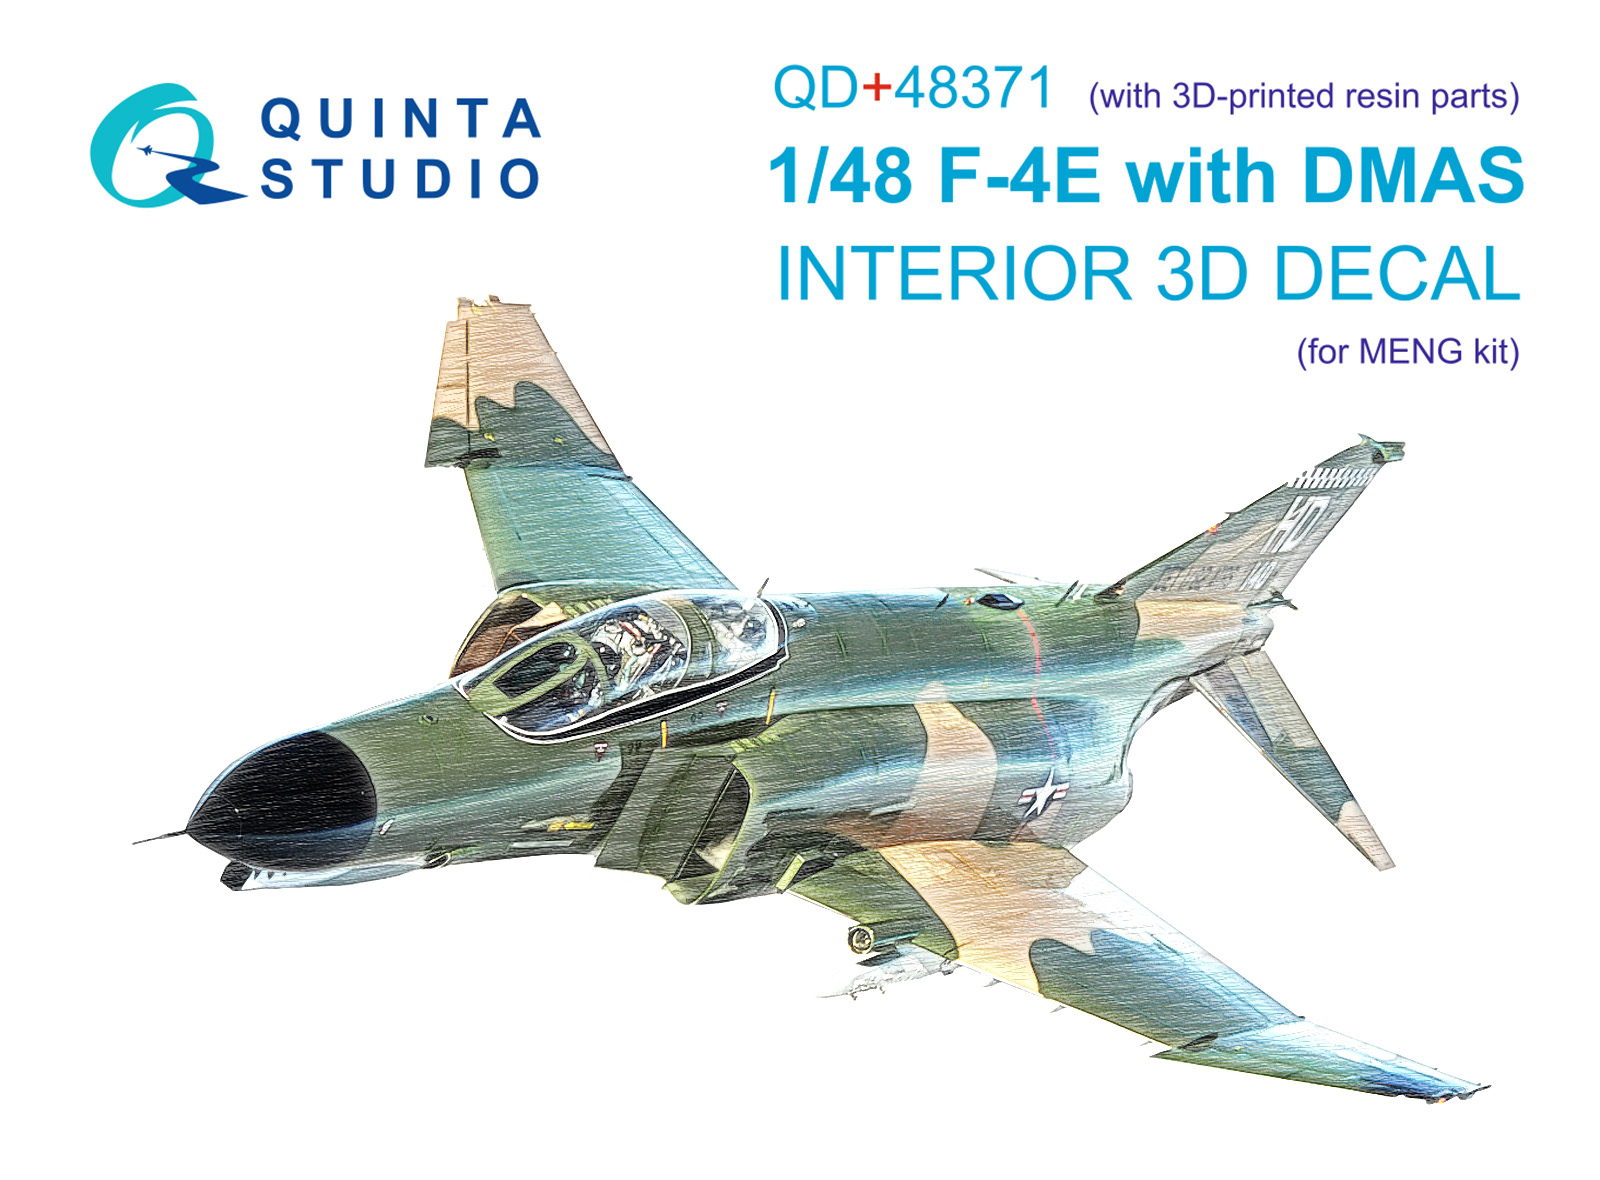 3D Декаль интерьера Quinta Studio 1/48 кабины F-4E c DMAS Meng с 3D-печатными QD+48371